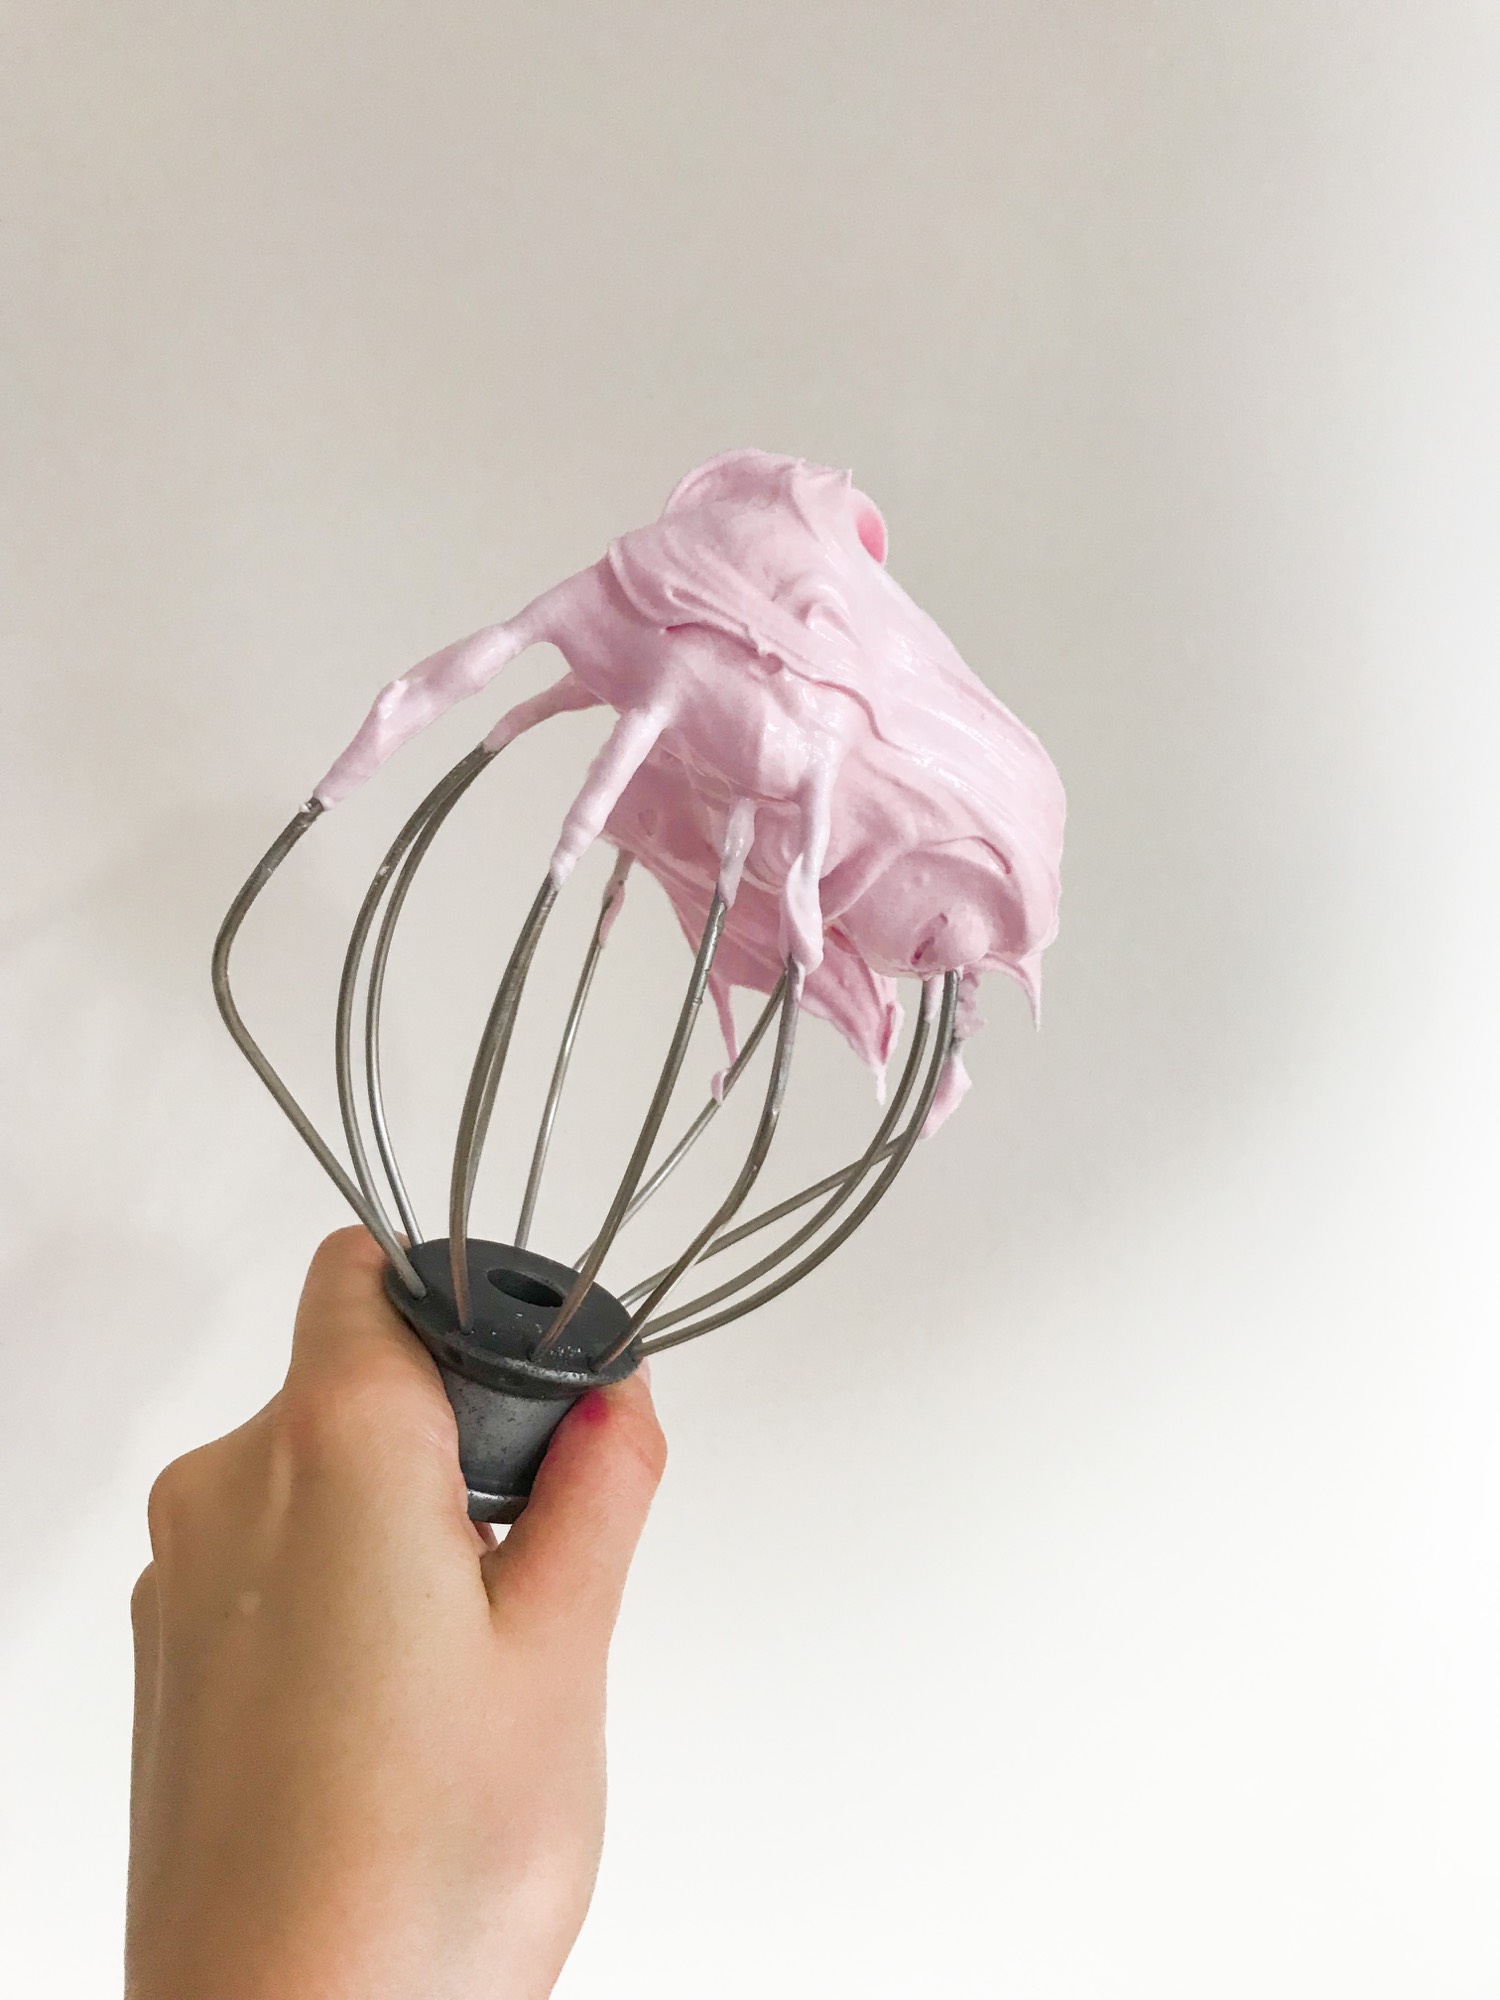 Pink meringue whisk kitchen aid